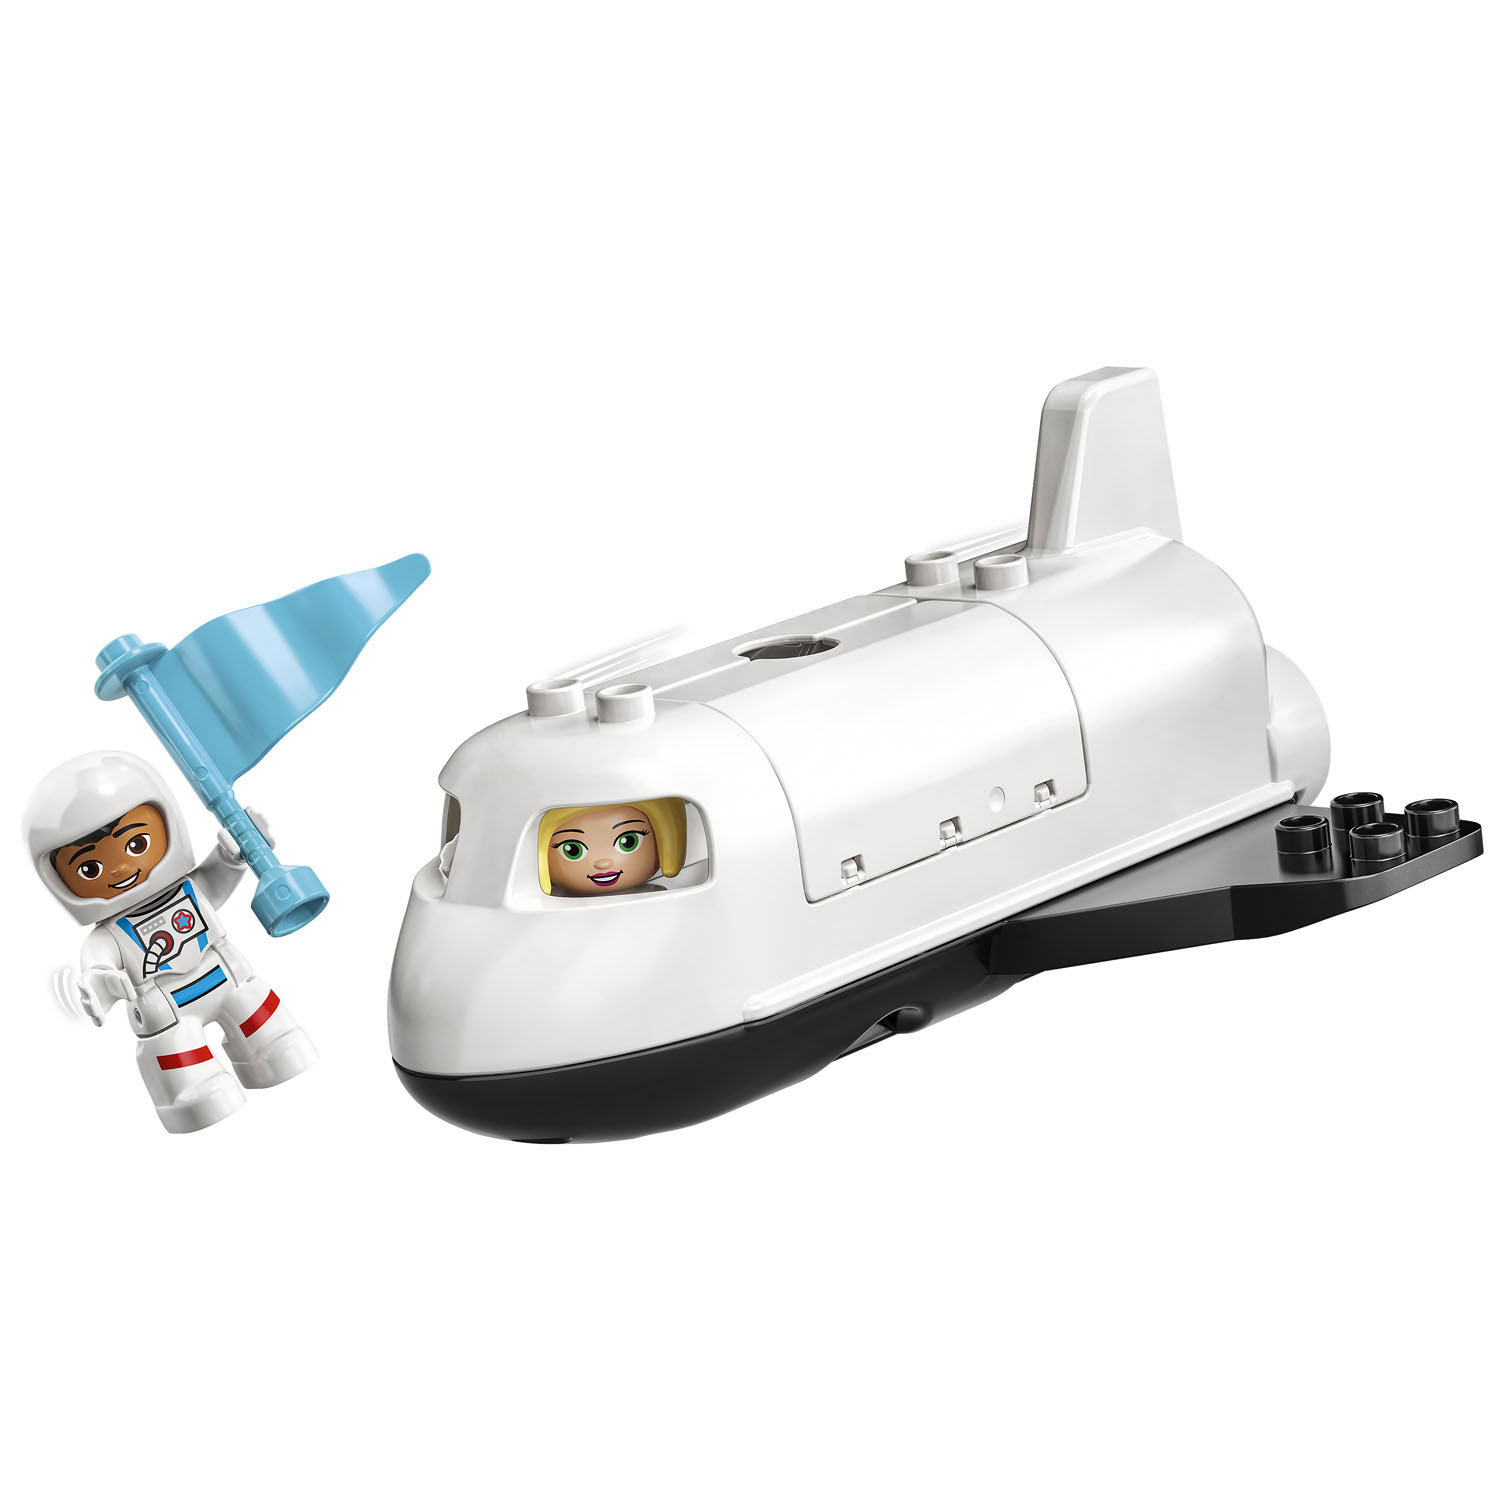 LEGO DUPLO 10944 Space Shuttle Missie